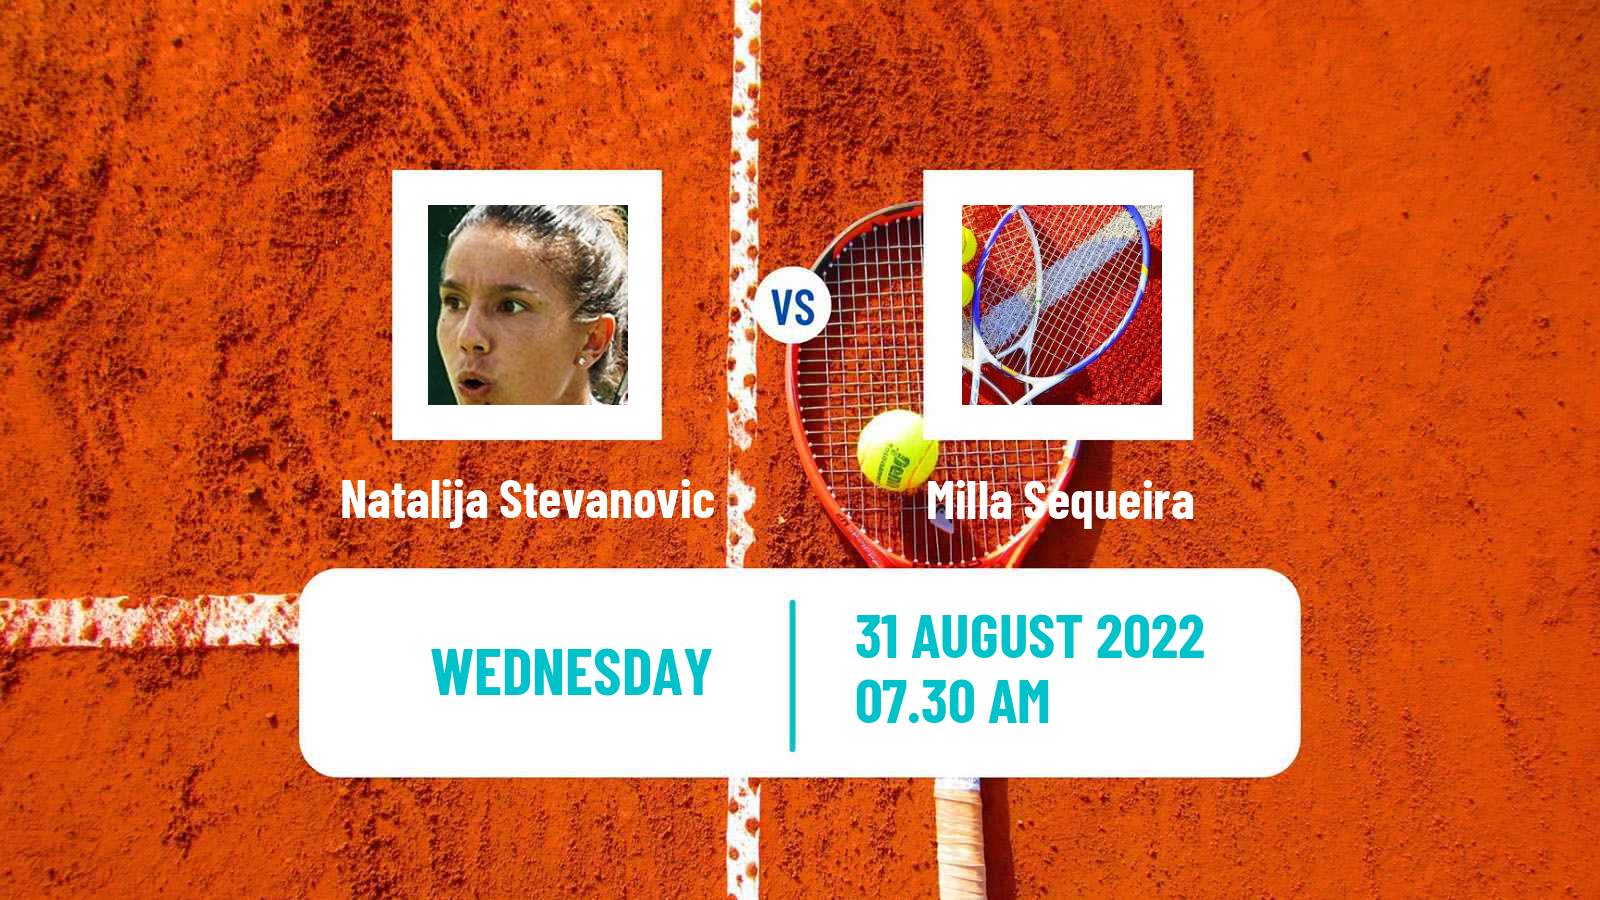 Tennis ITF Tournaments Natalija Stevanovic - Milla Sequeira